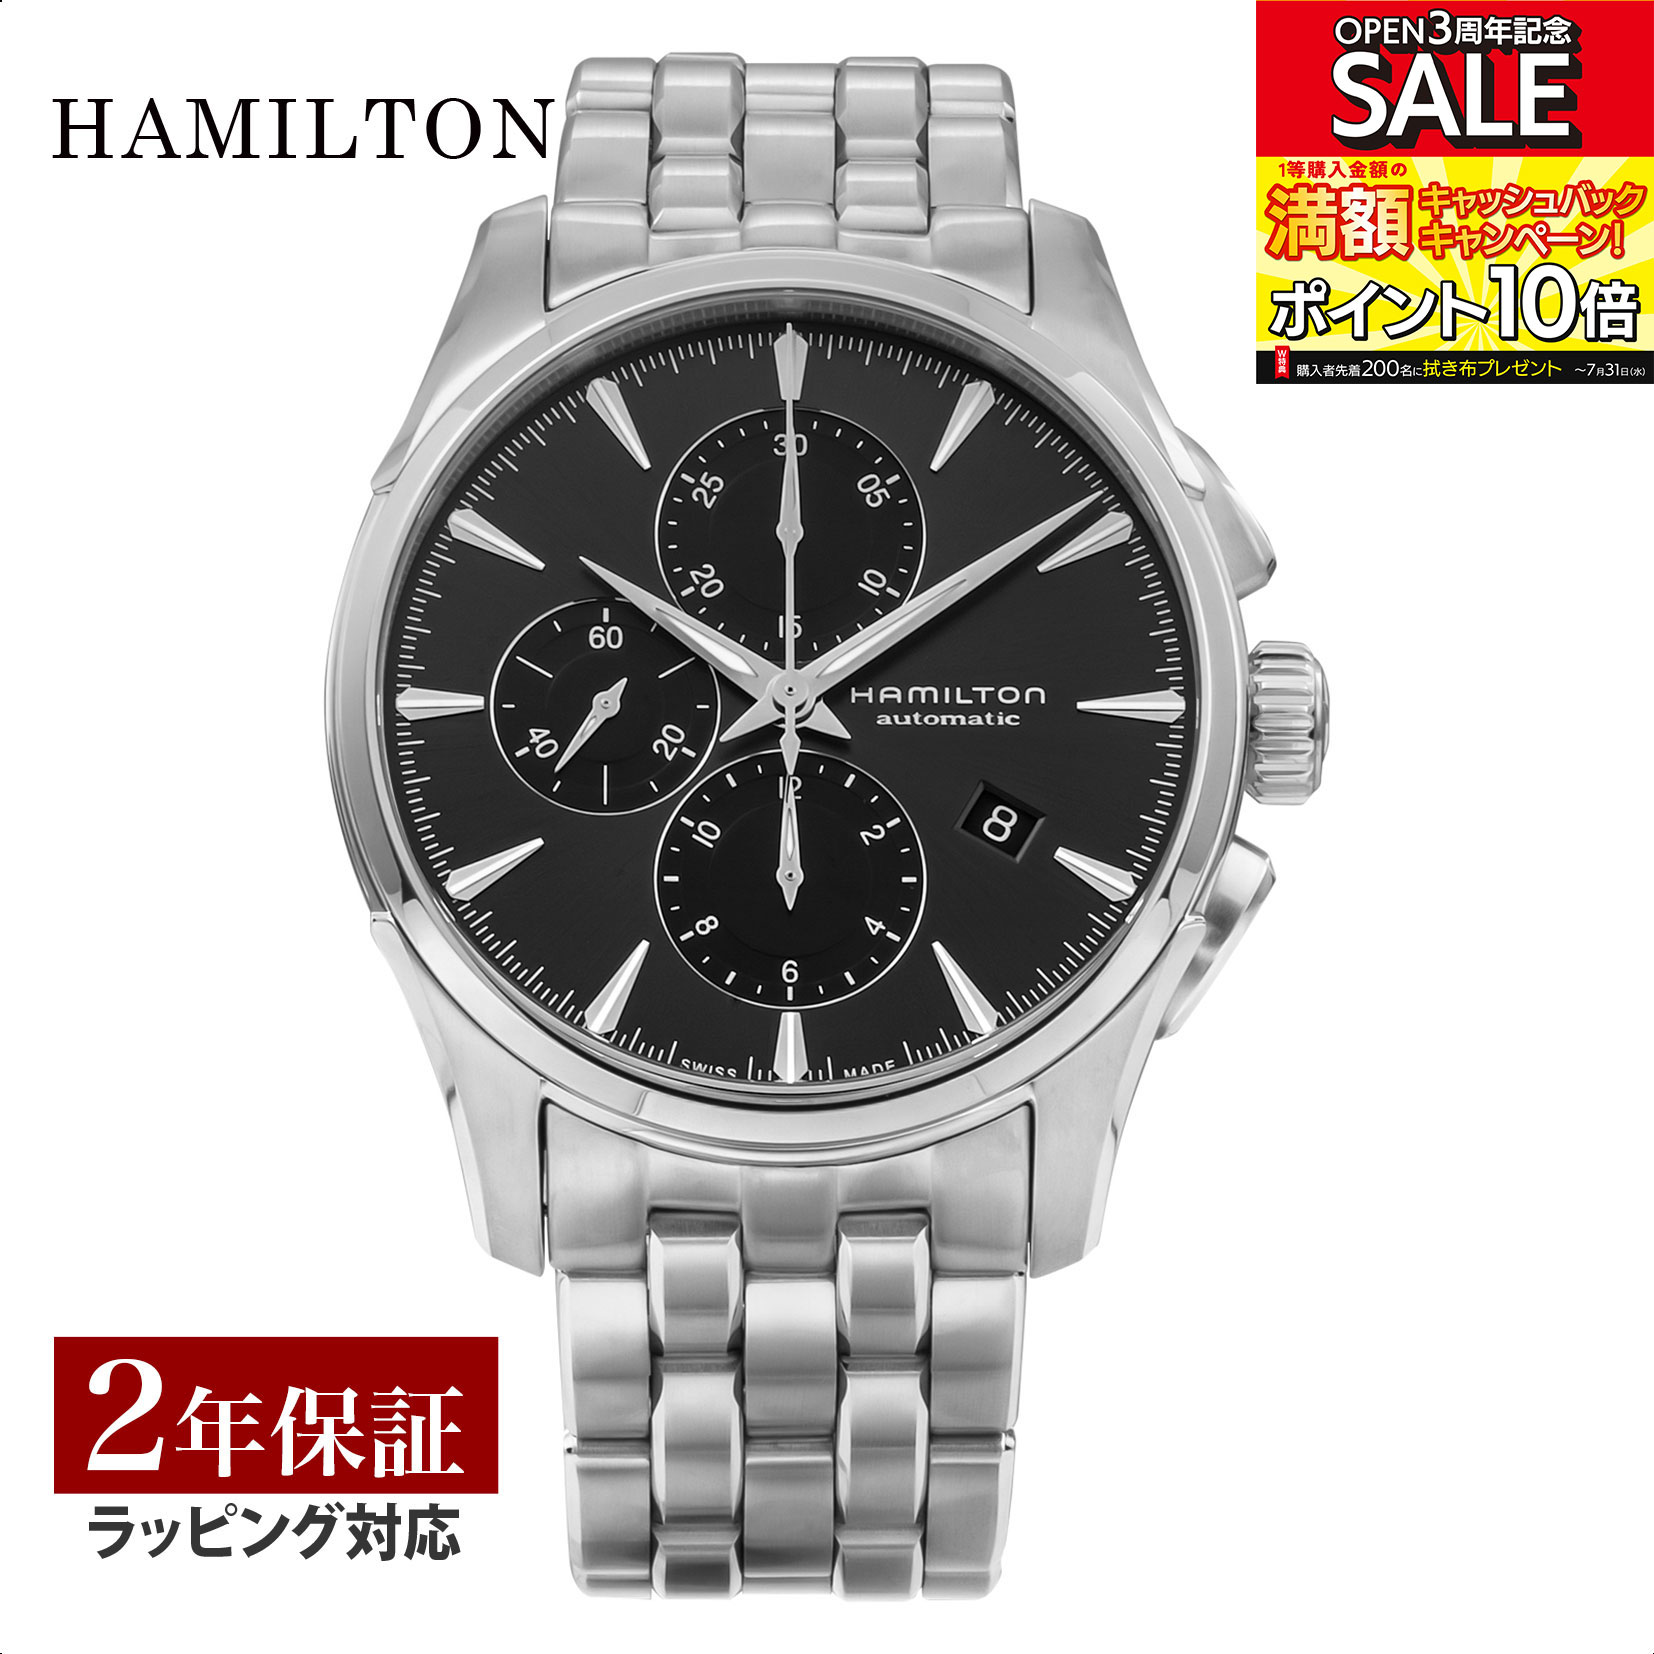 ハミルトン HAMILTON メンズ 時計 JAZZMASTER ジャズマスター 自動巻 グレー H32586181 時計 腕時計 高級腕時計 ブランド